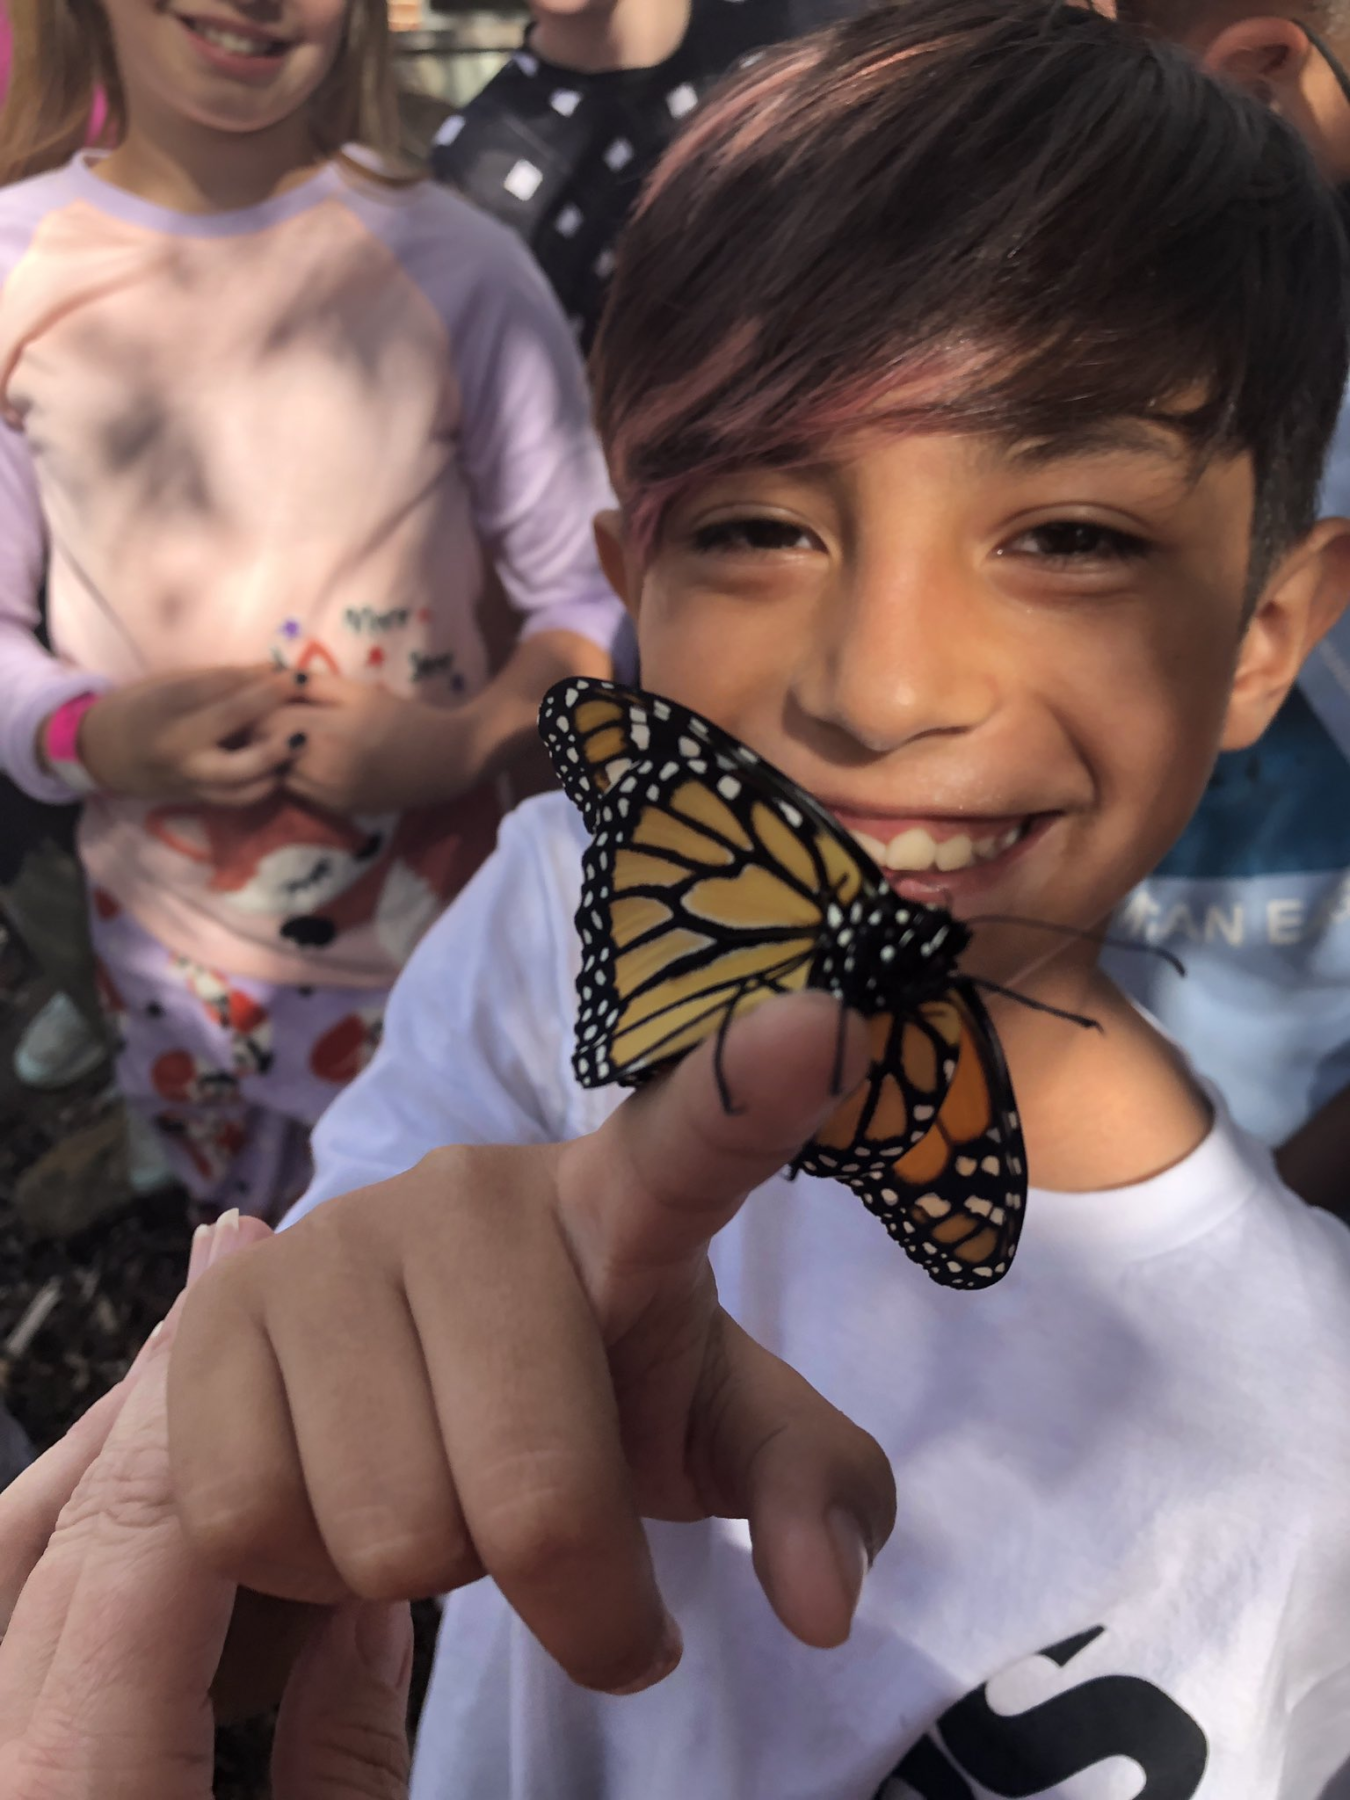 angleton isd butterflies